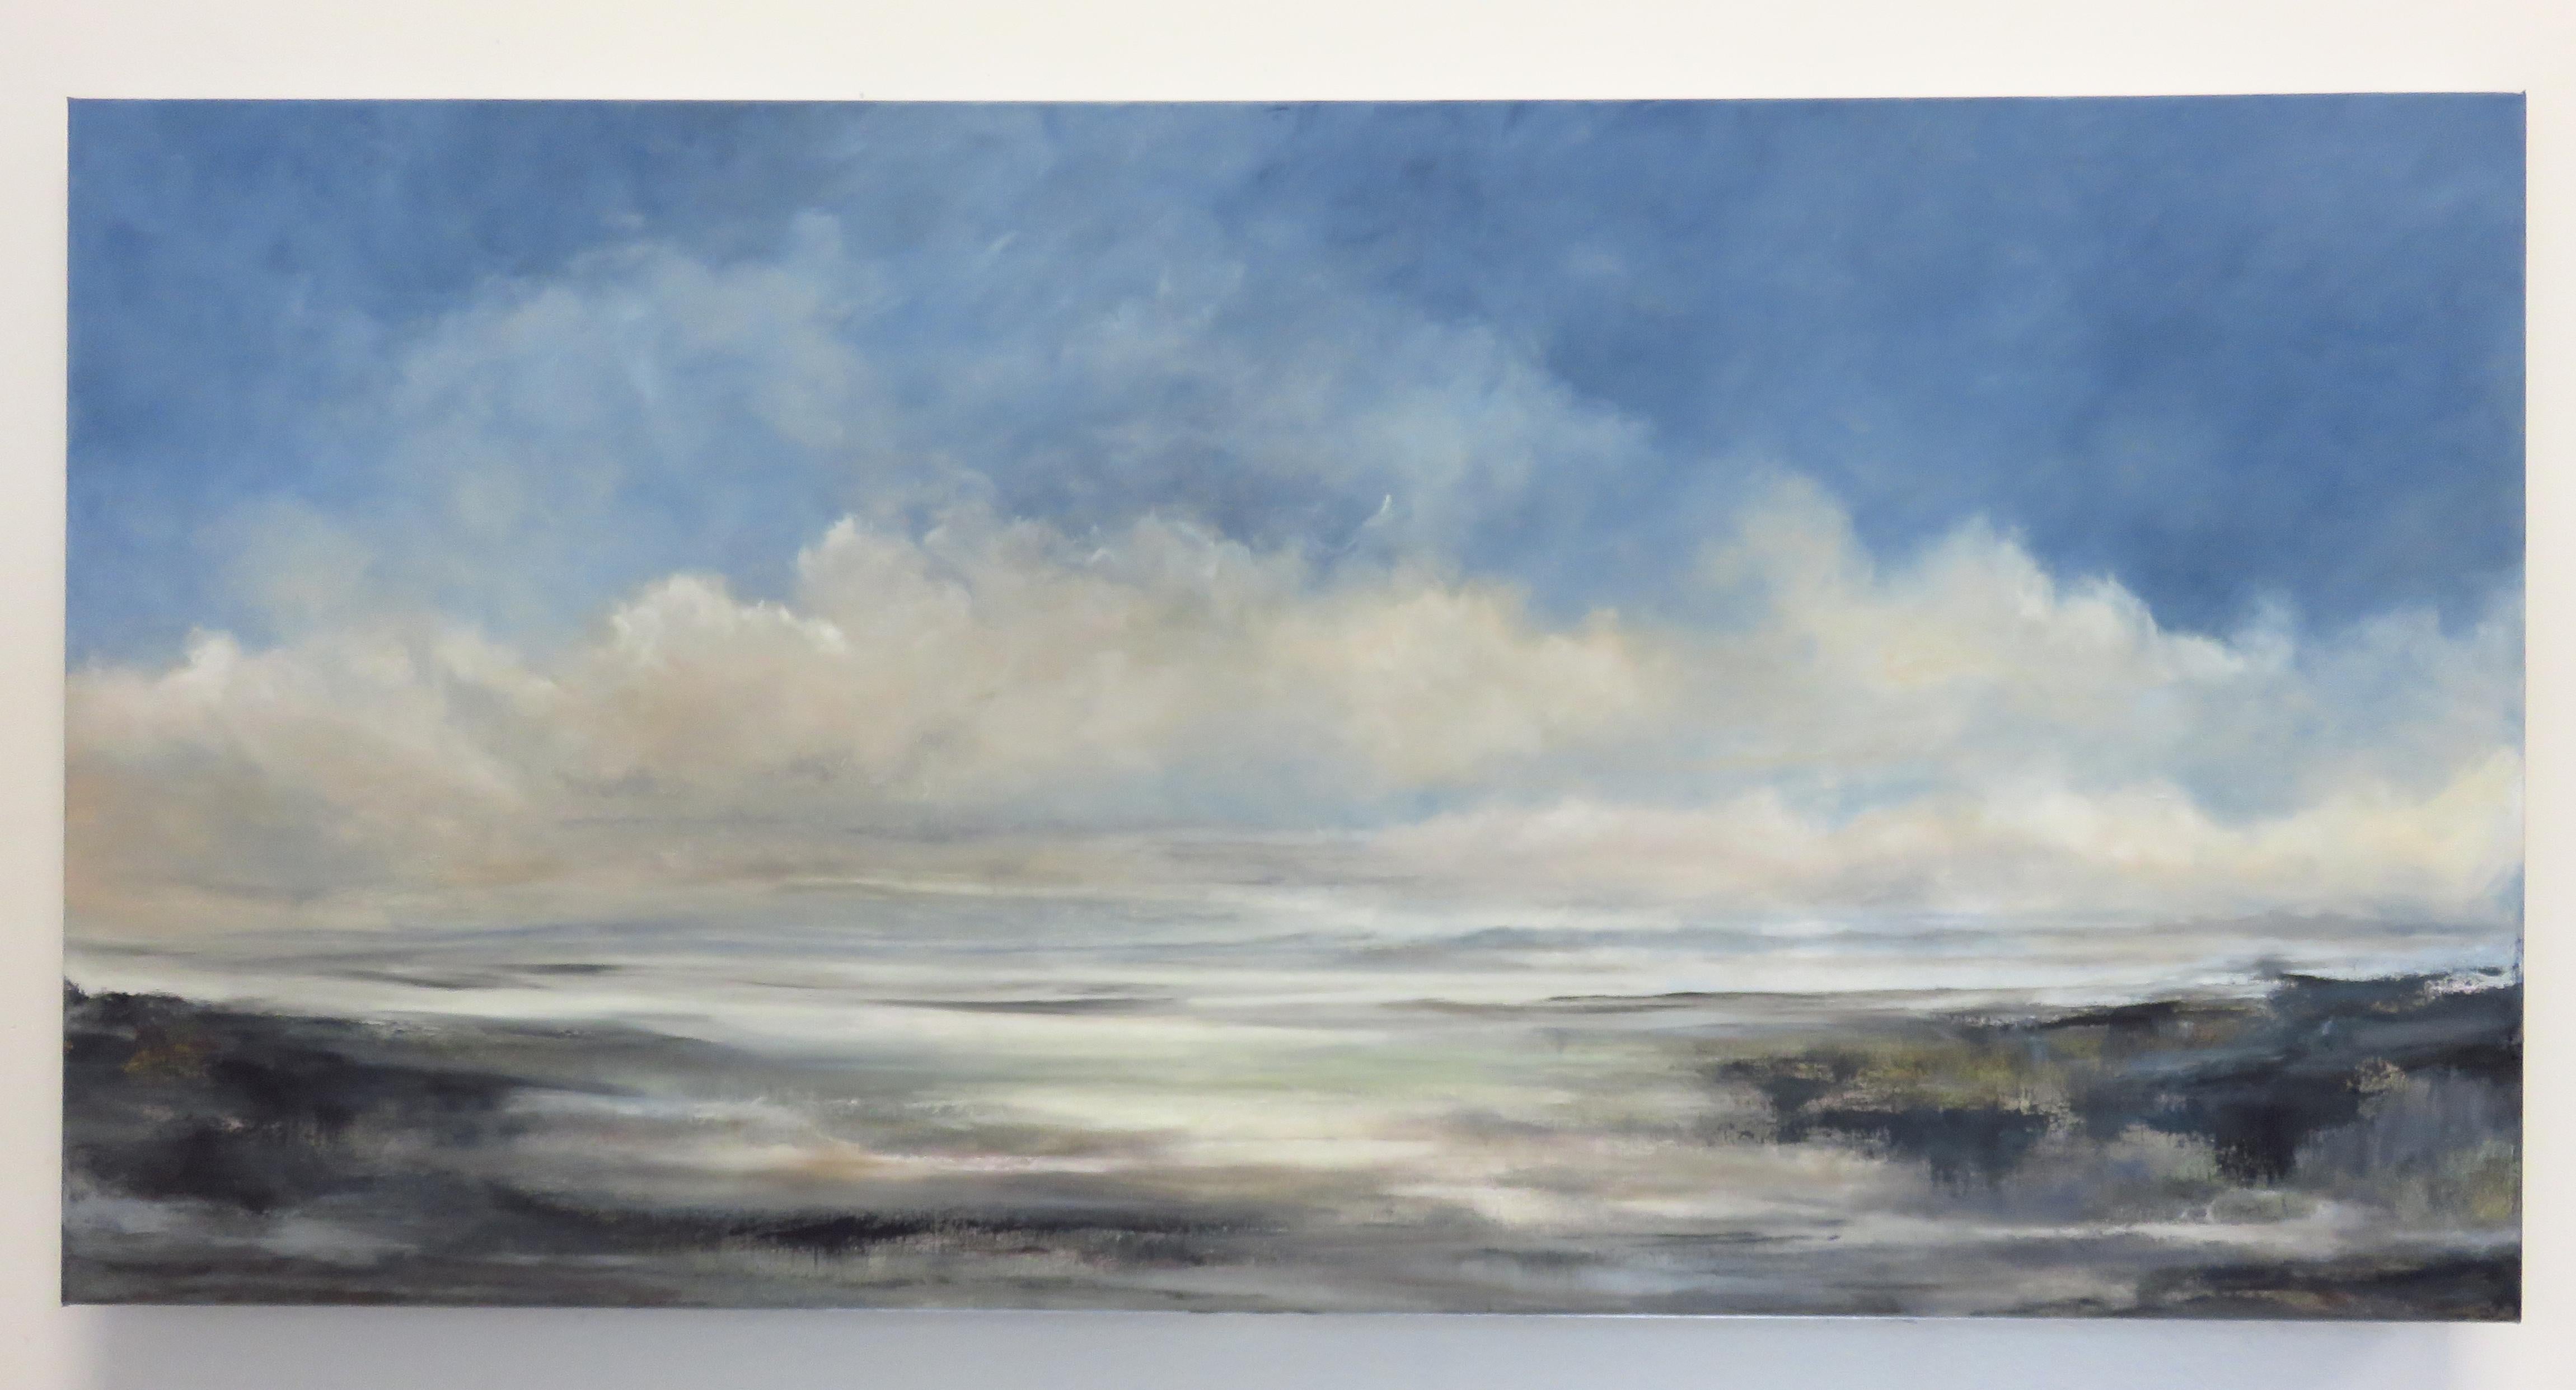 <p>Commentaires de l'artiste<br>Le ciel et la mer convergent dans l'œuvre panoramique saisissante de l'artiste Jenn Williamson. Elle explore la lumière et l'obscurité, à la recherche de la beauté dans des endroits calmes et inaperçus, créant ainsi